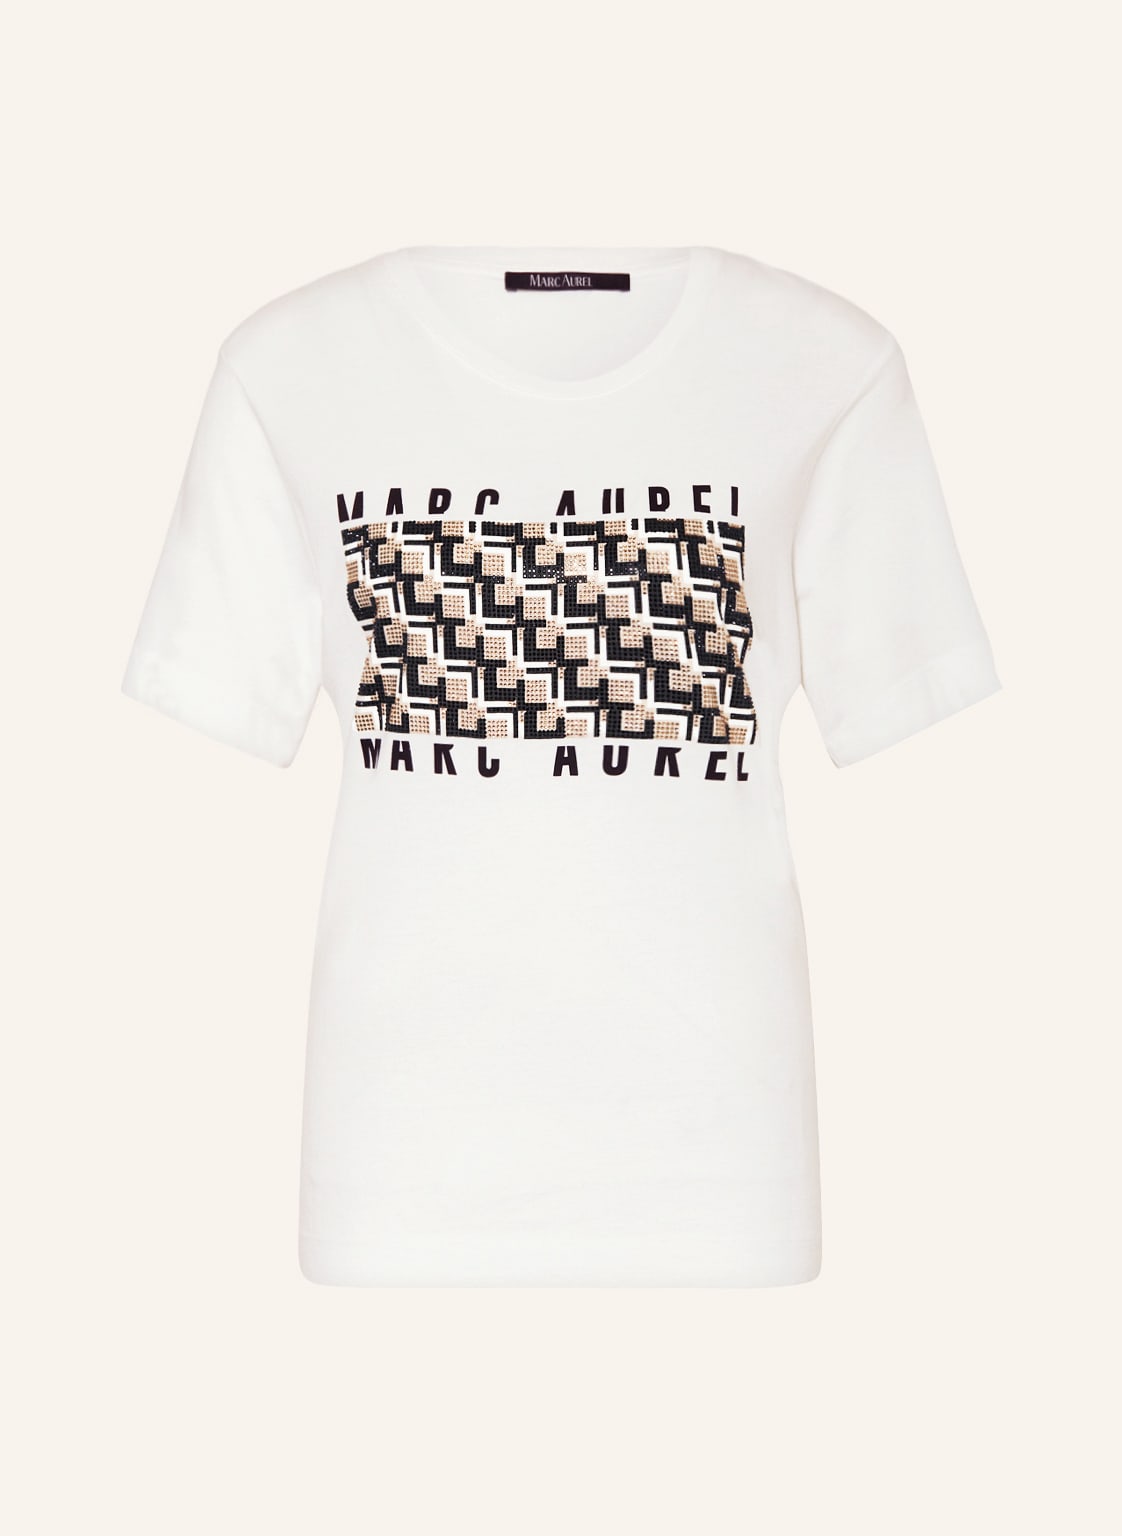 Marc Aurel T-Shirt Mit Schmucksteinen weiss von MARC AUREL